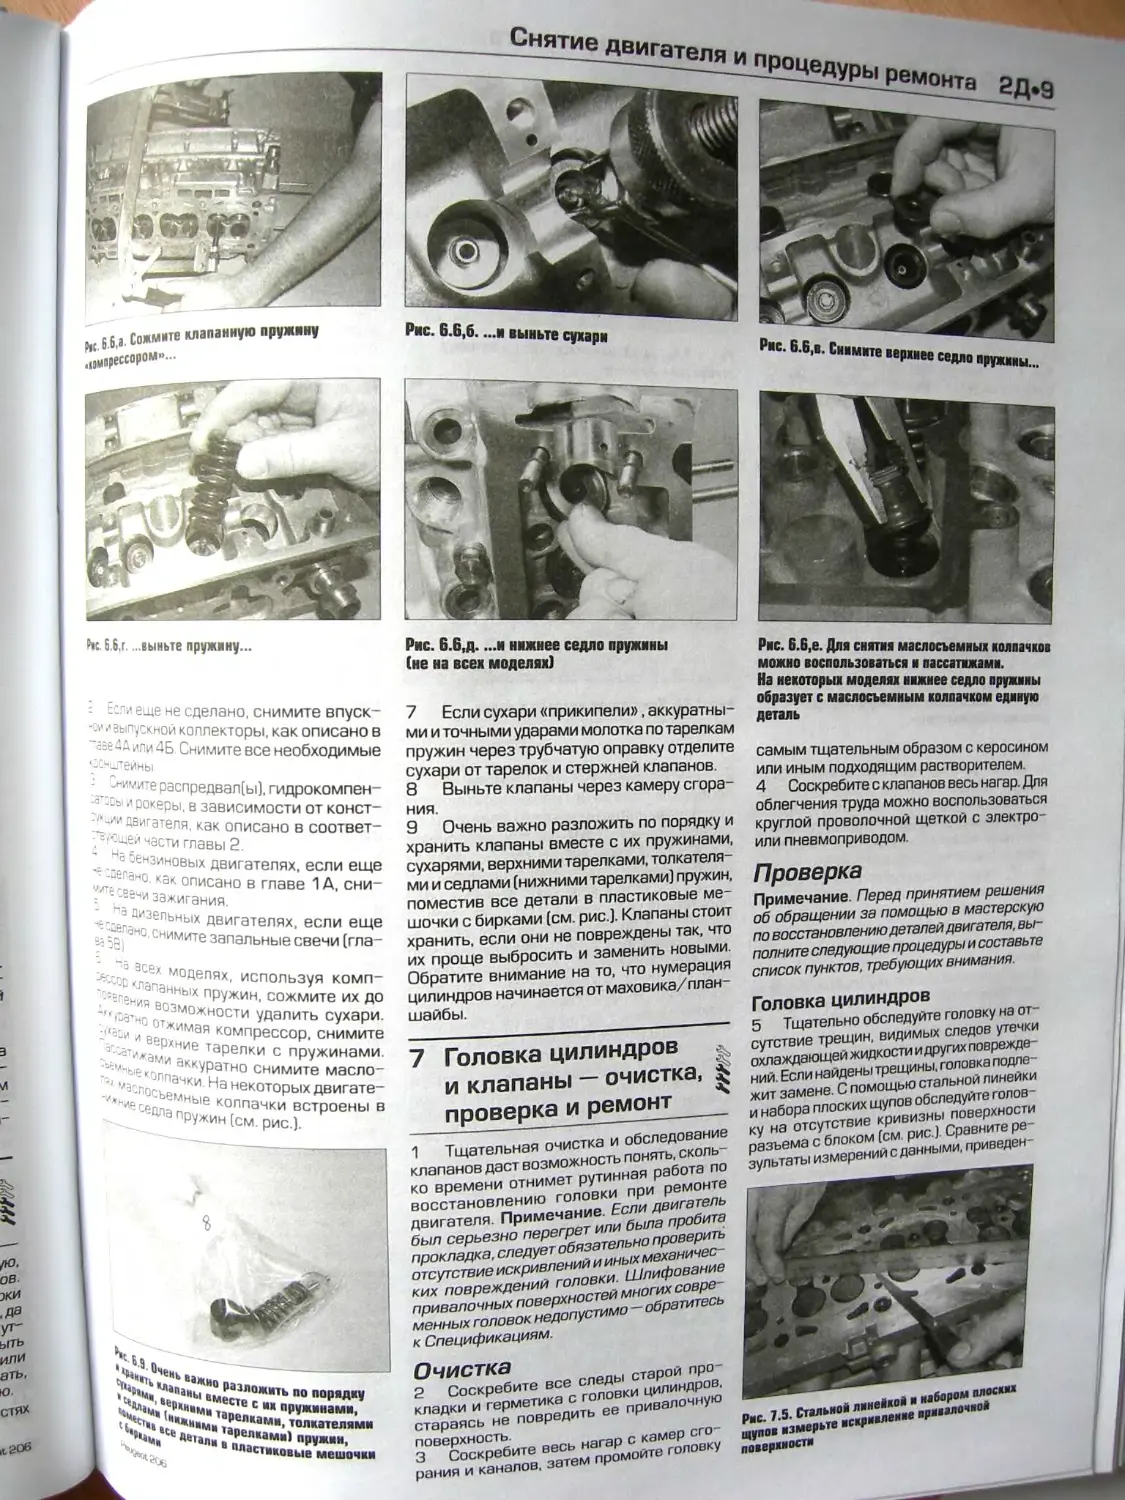 7. Головка цилиндров и клапаны – очистка, проверка и ремонт